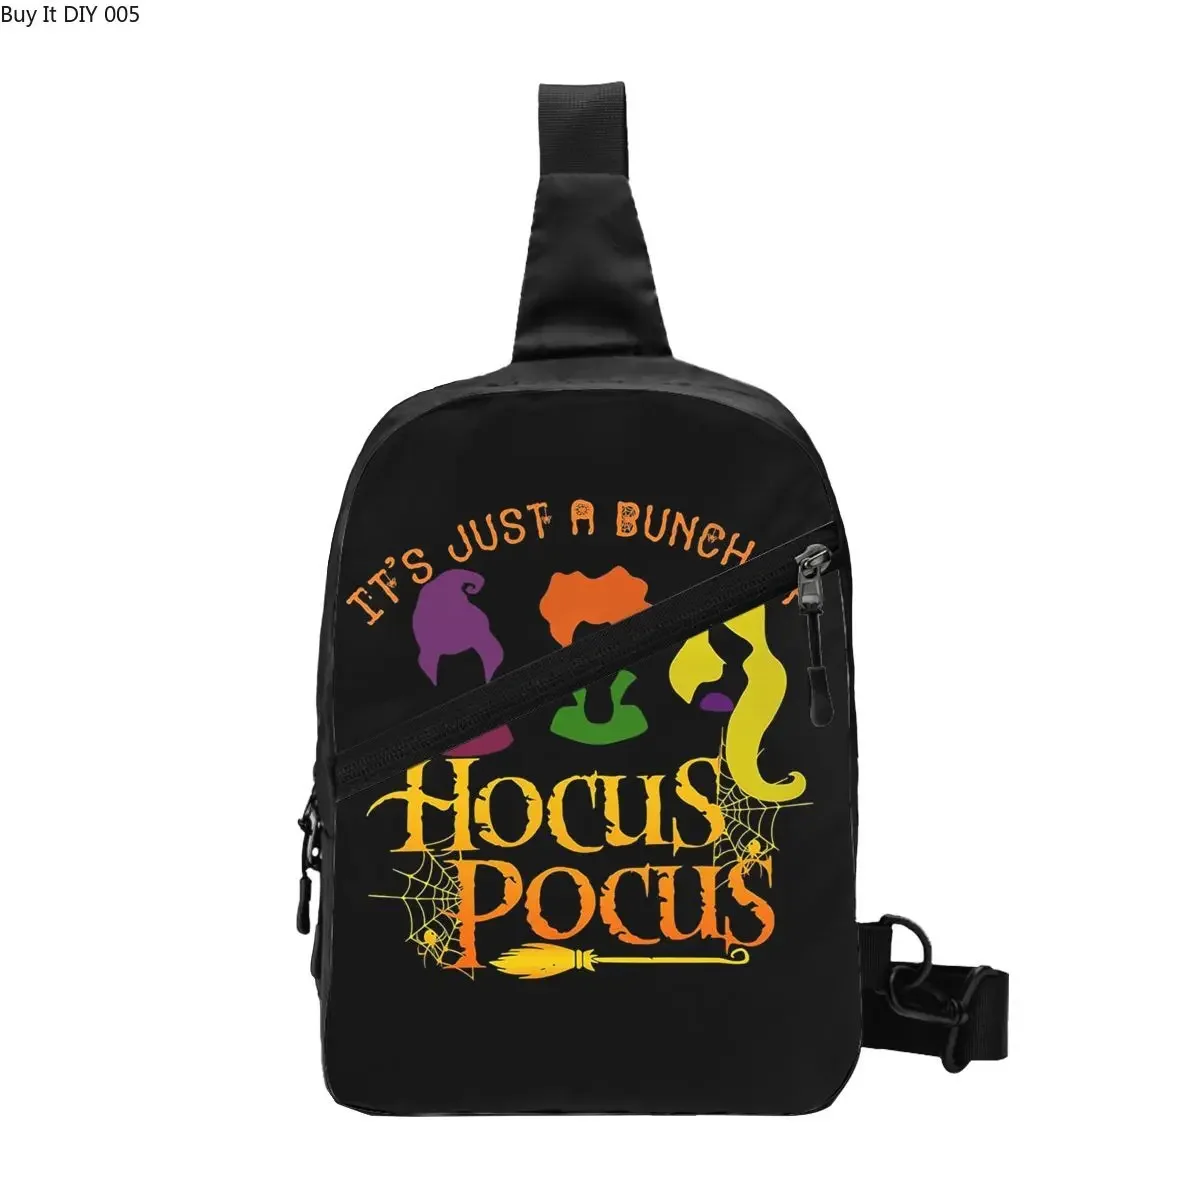 

Крутая Сумка-слинг Hocus на Хэллоуин ночной покус мужской рюкзак через плечо для велоспорта кемпинга с ужасным фильмом ведьмы нагрудный рюкзак на плечо